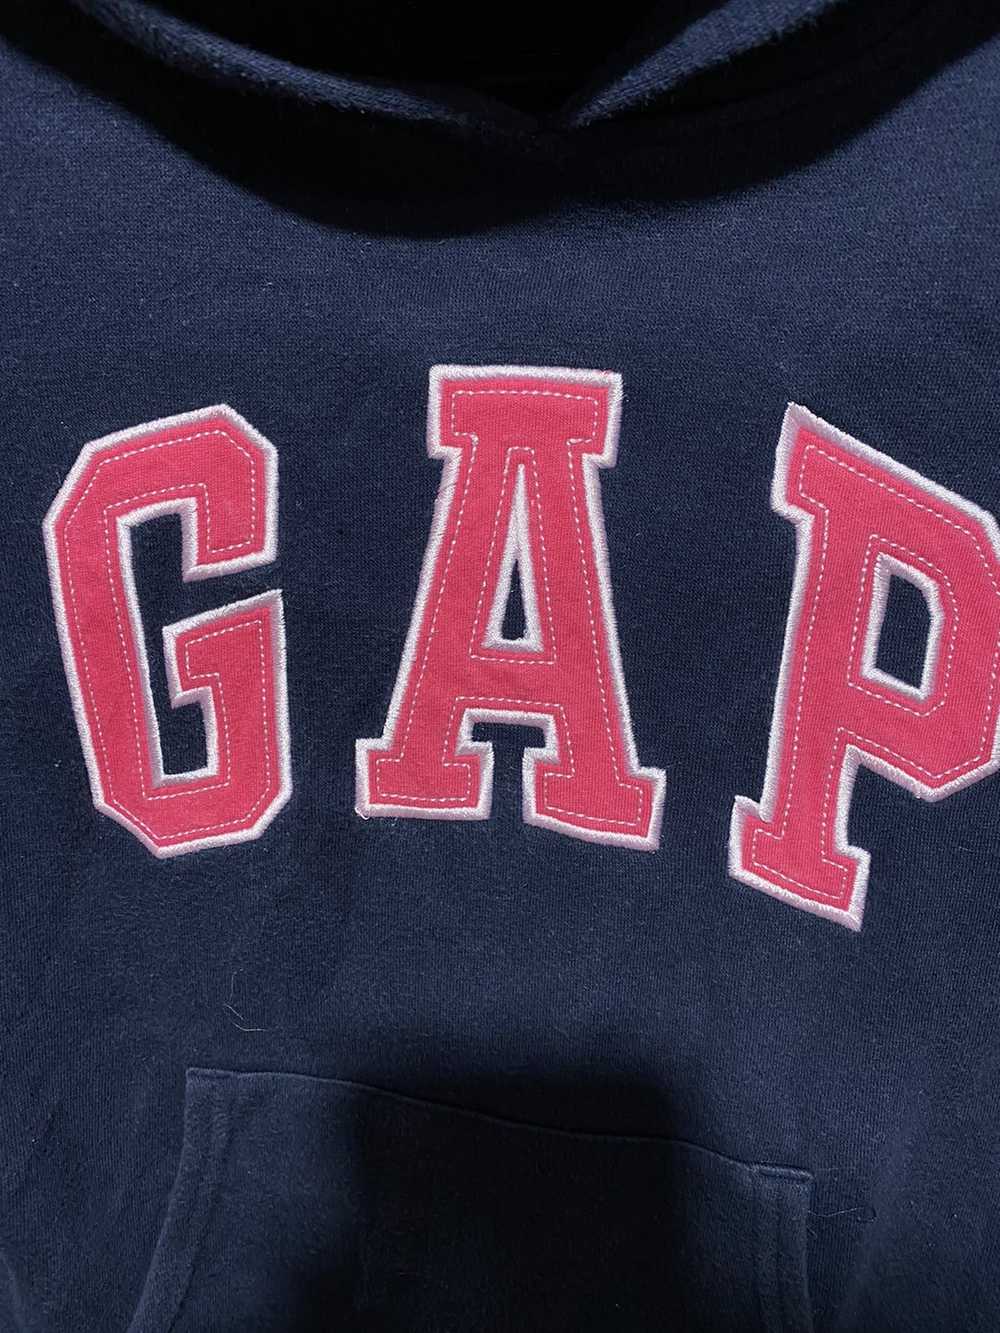 Gap × Streetwear × Vintage Vintage 90s Gap Athlet… - image 5